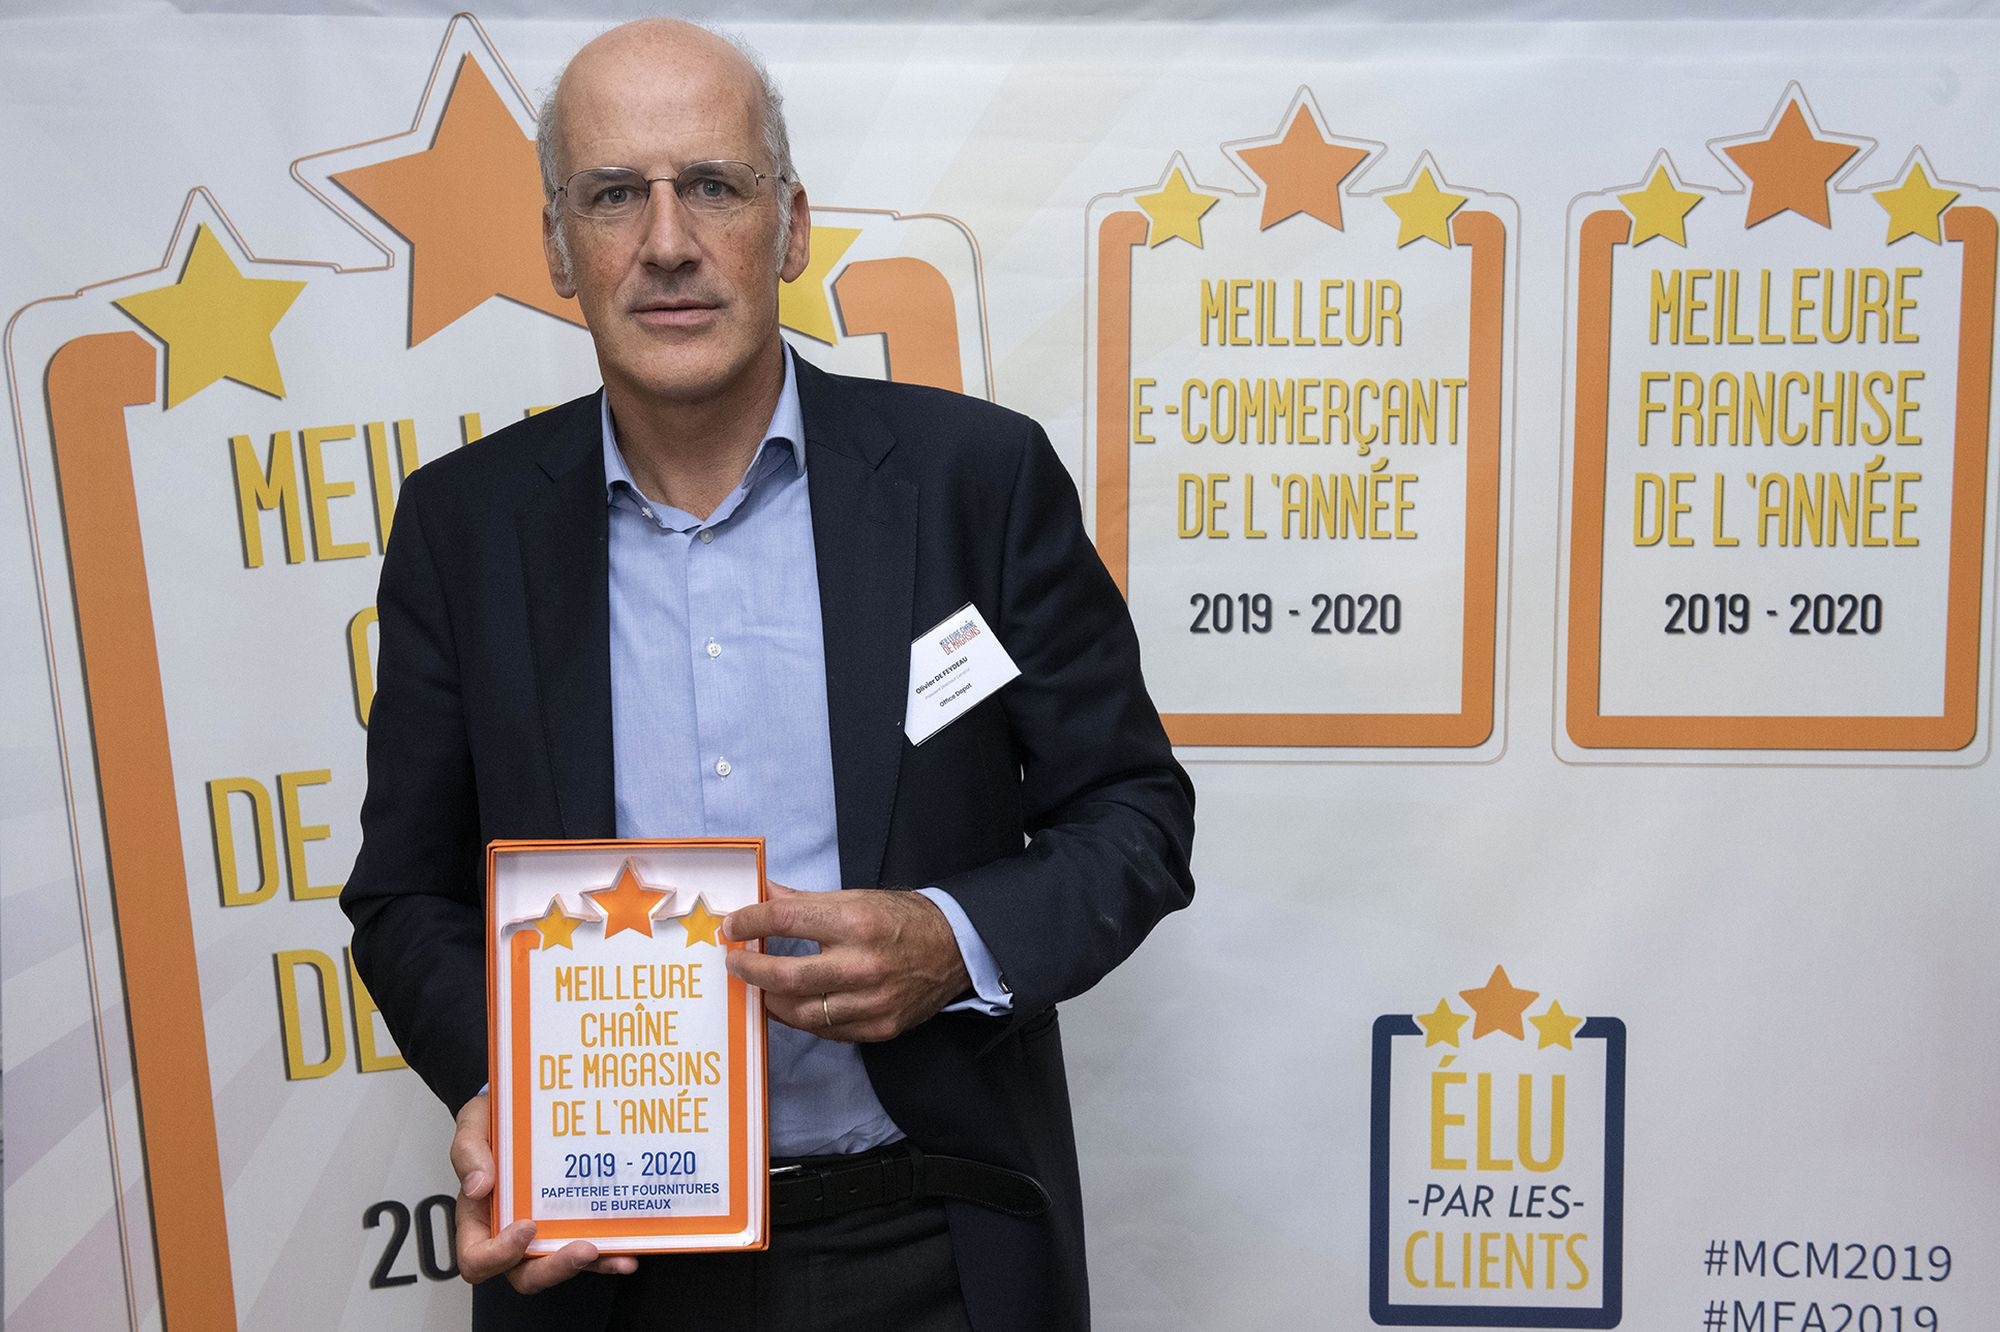 Office Depot France remporte le trophée Meilleure chaîne de magasins